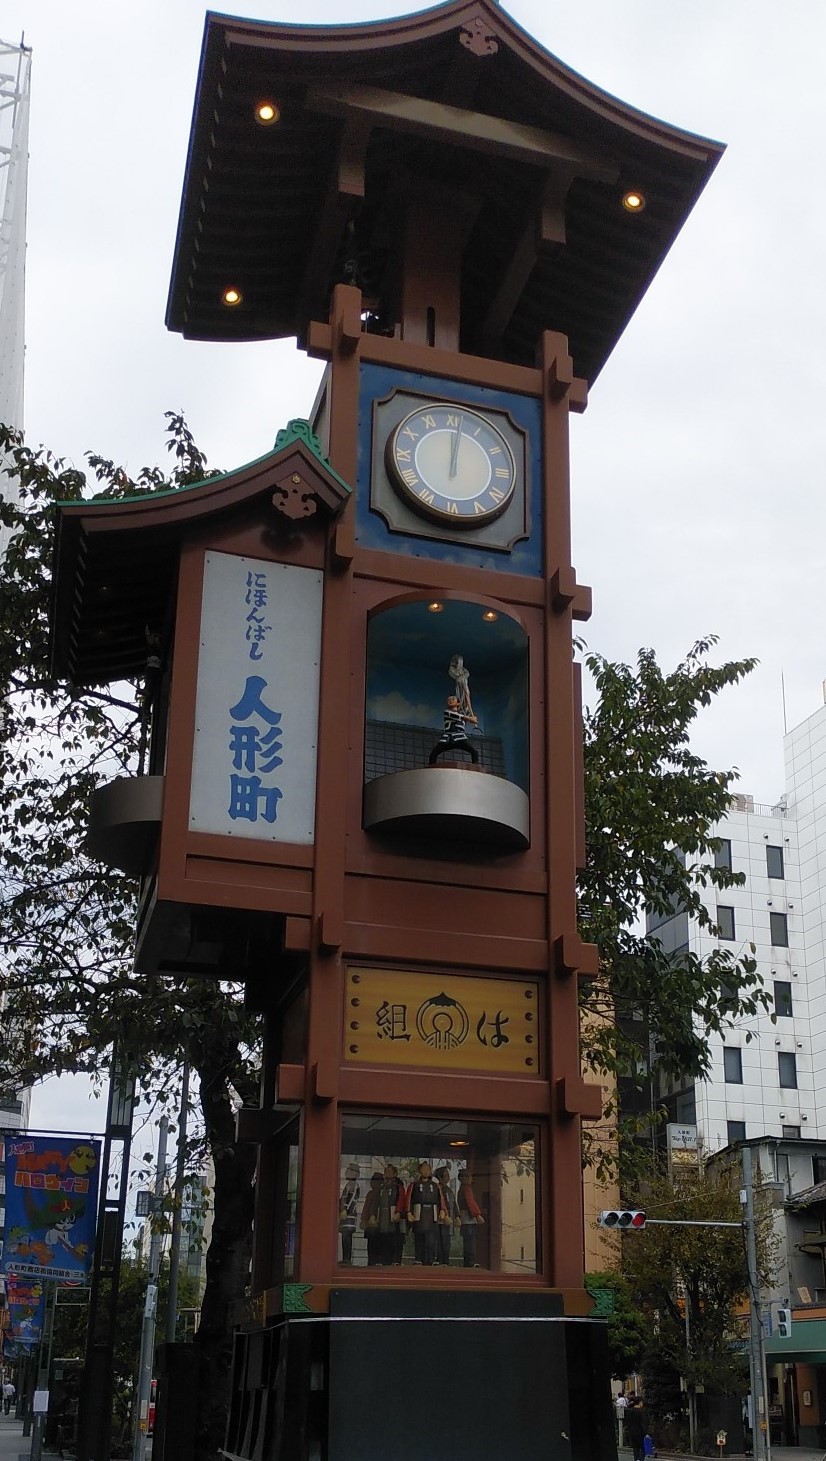  からくり時計は、人形町のシンボル櫓（やぐら）。